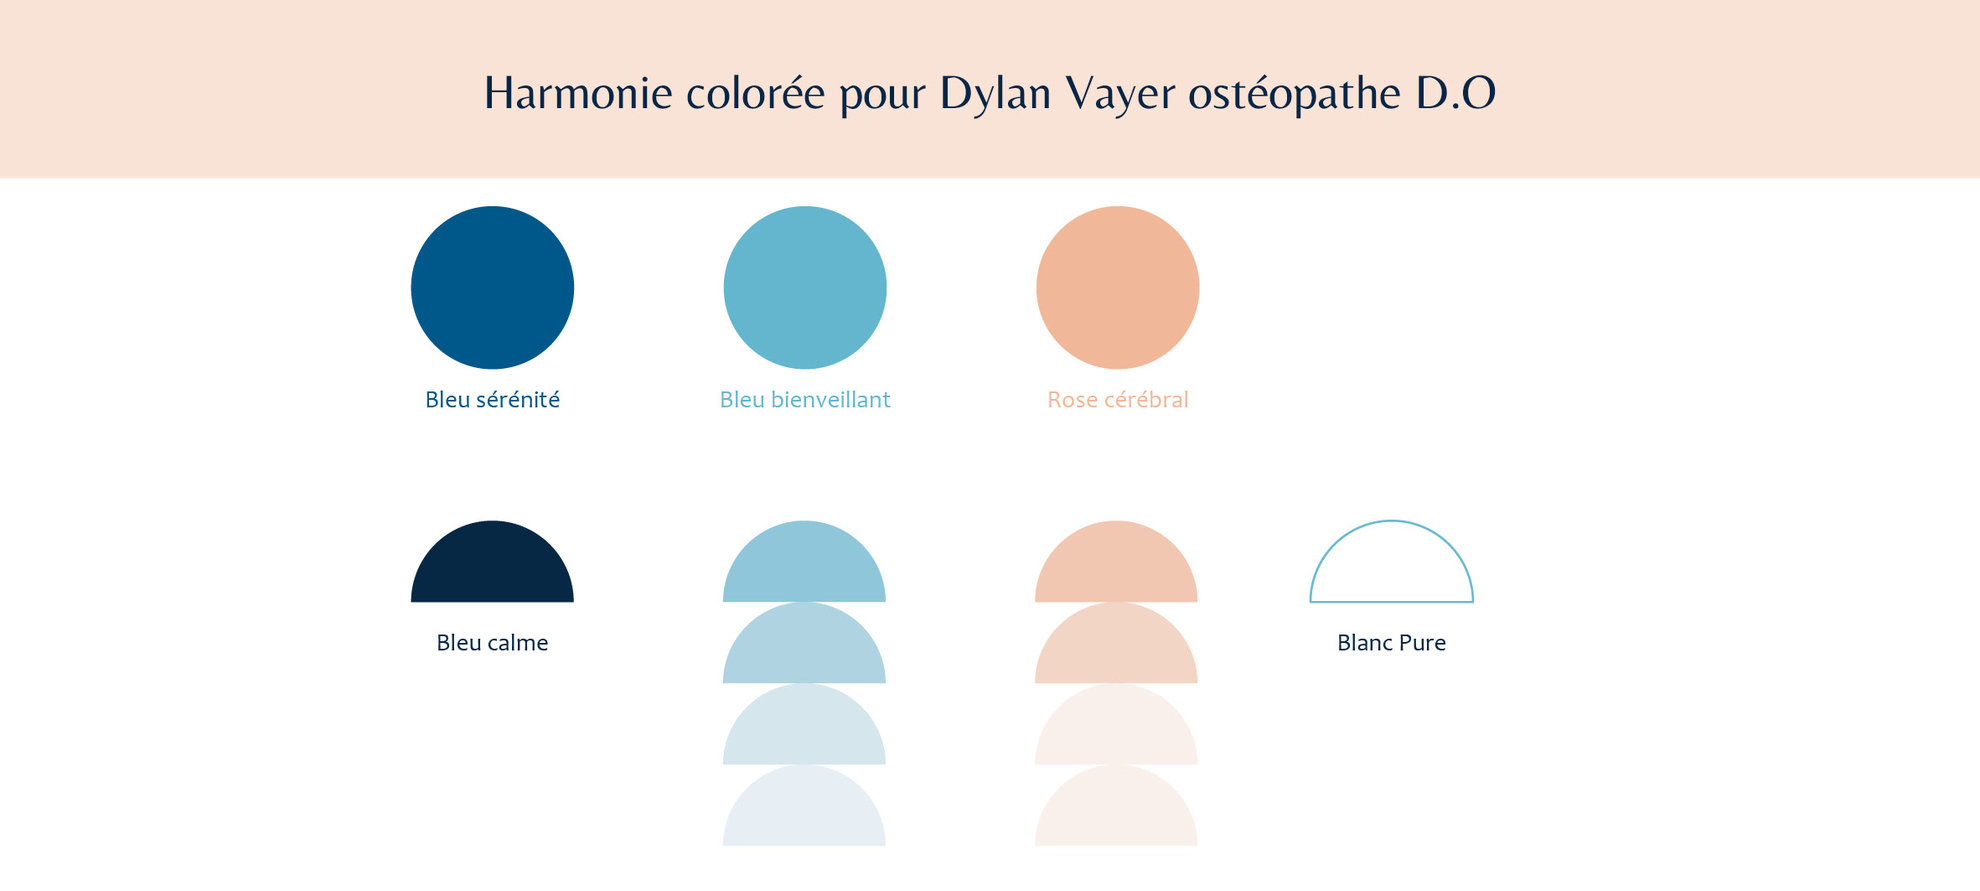 Identité visuelle, harmonie colorée pour Dylan Vayer ostéopathe D.O